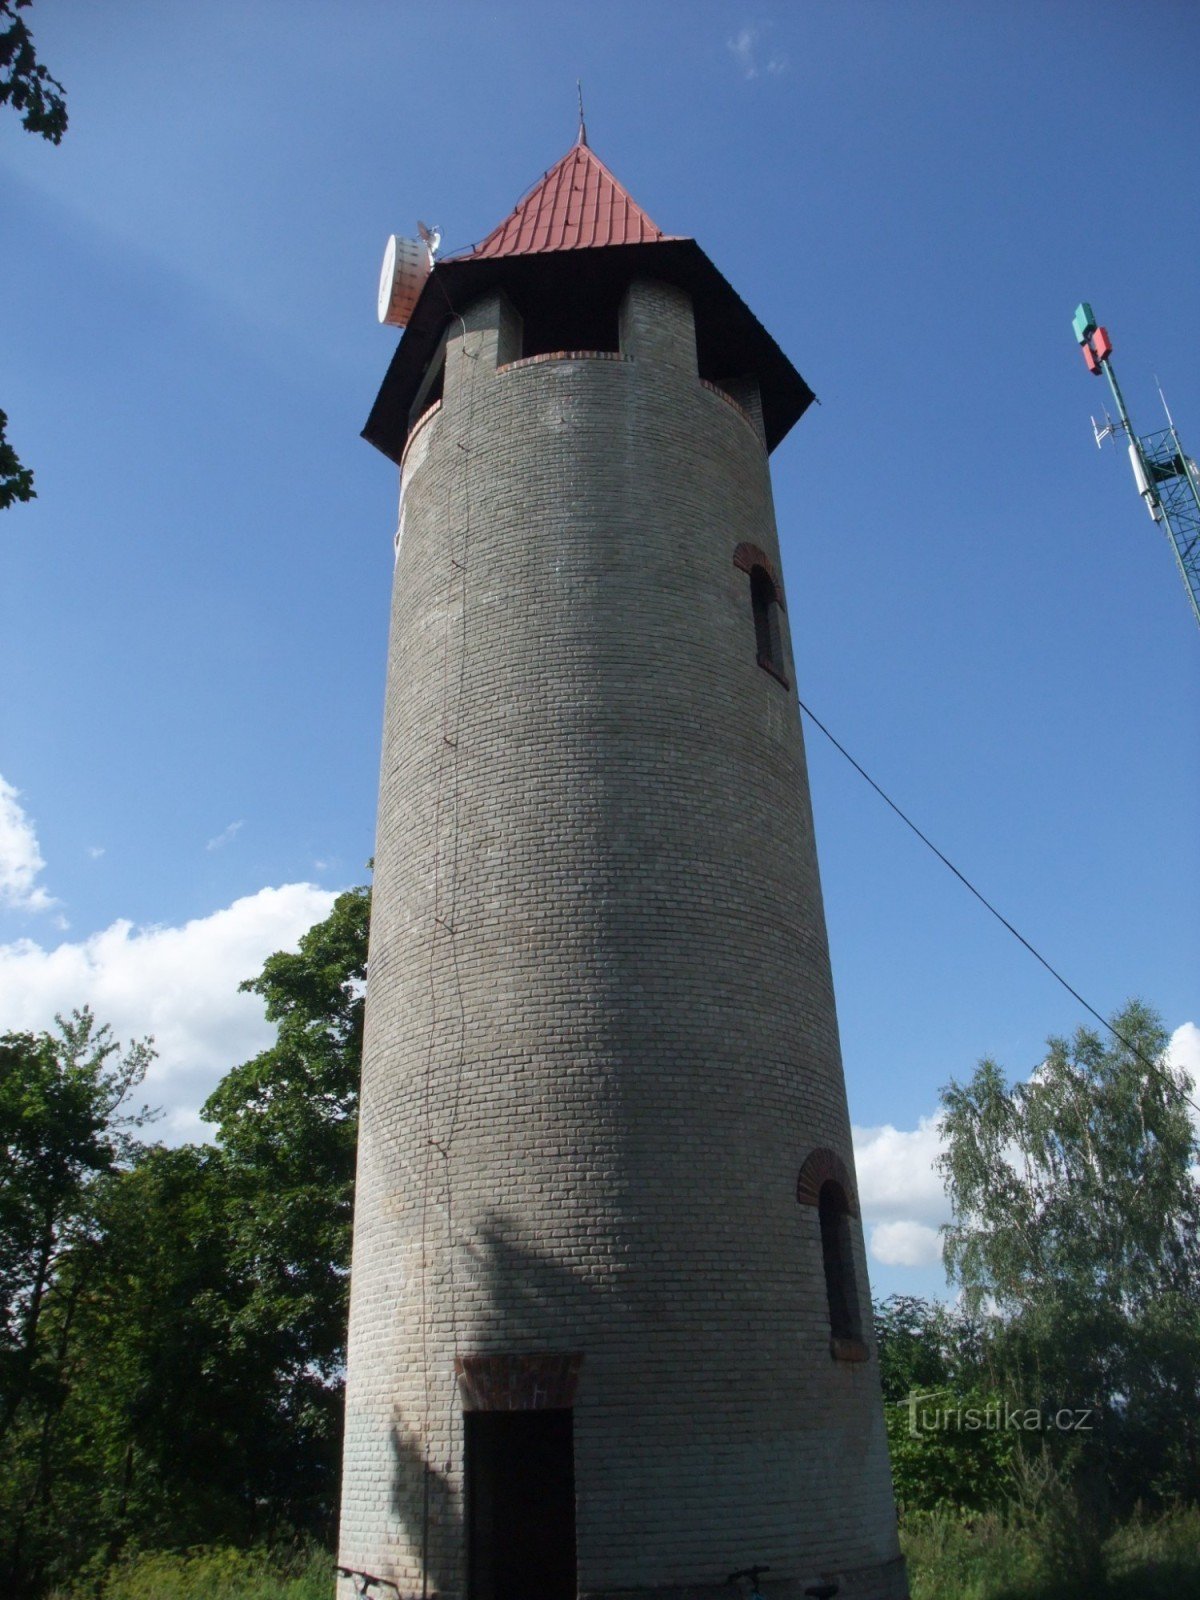 Bohuš lookout tower